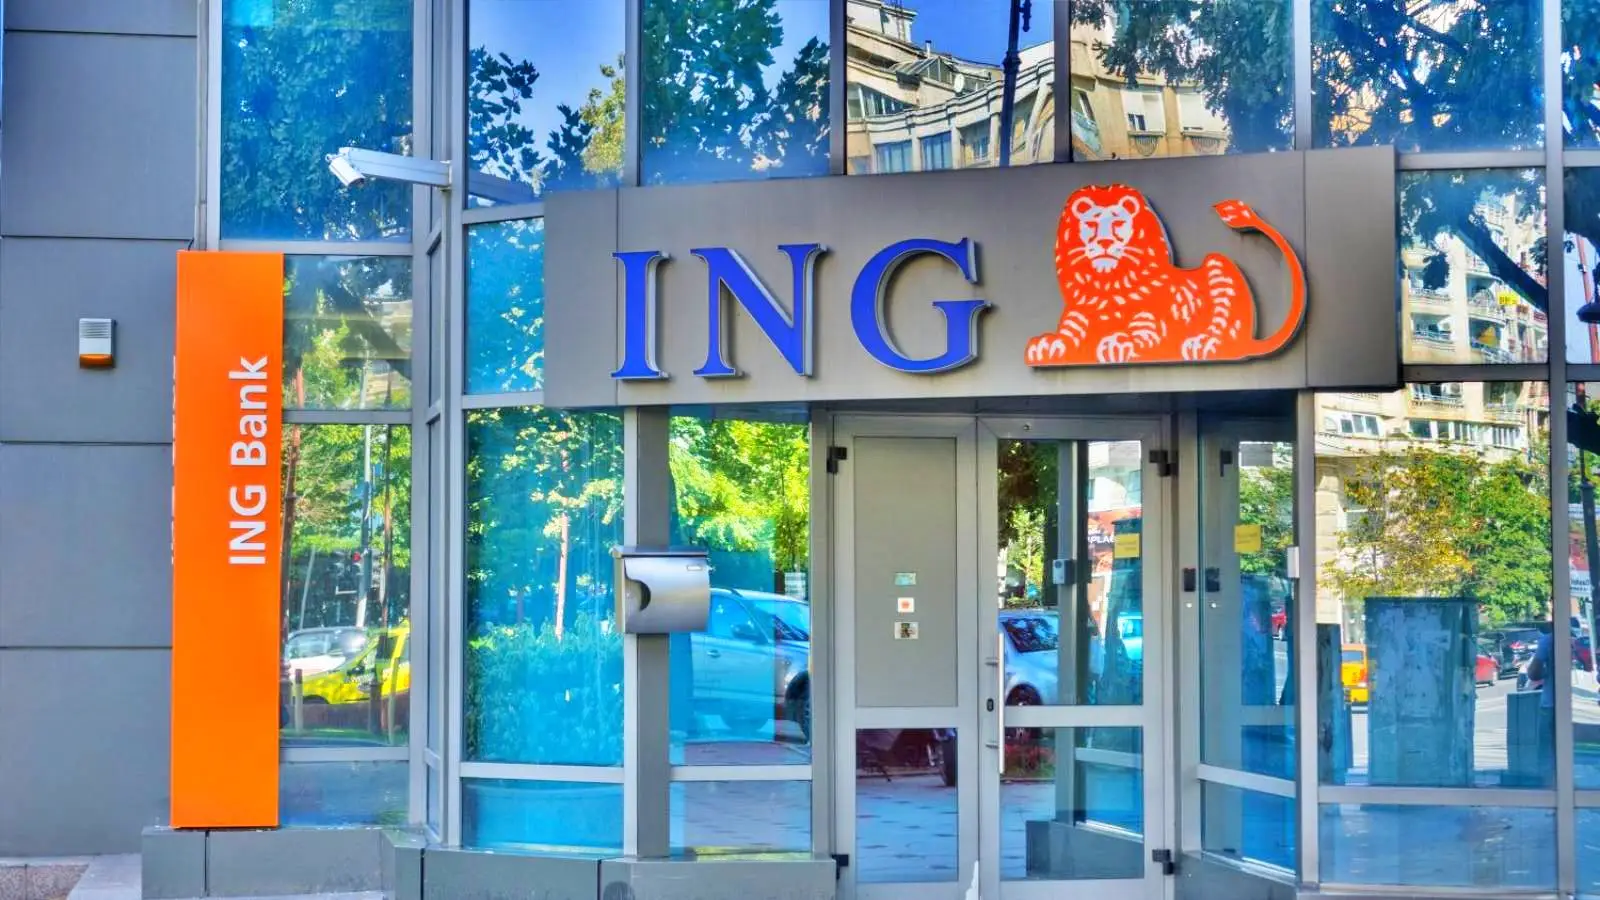 ING Bank publiceerde ZORGENDE aankondiging aan Roemenen uit alle landen